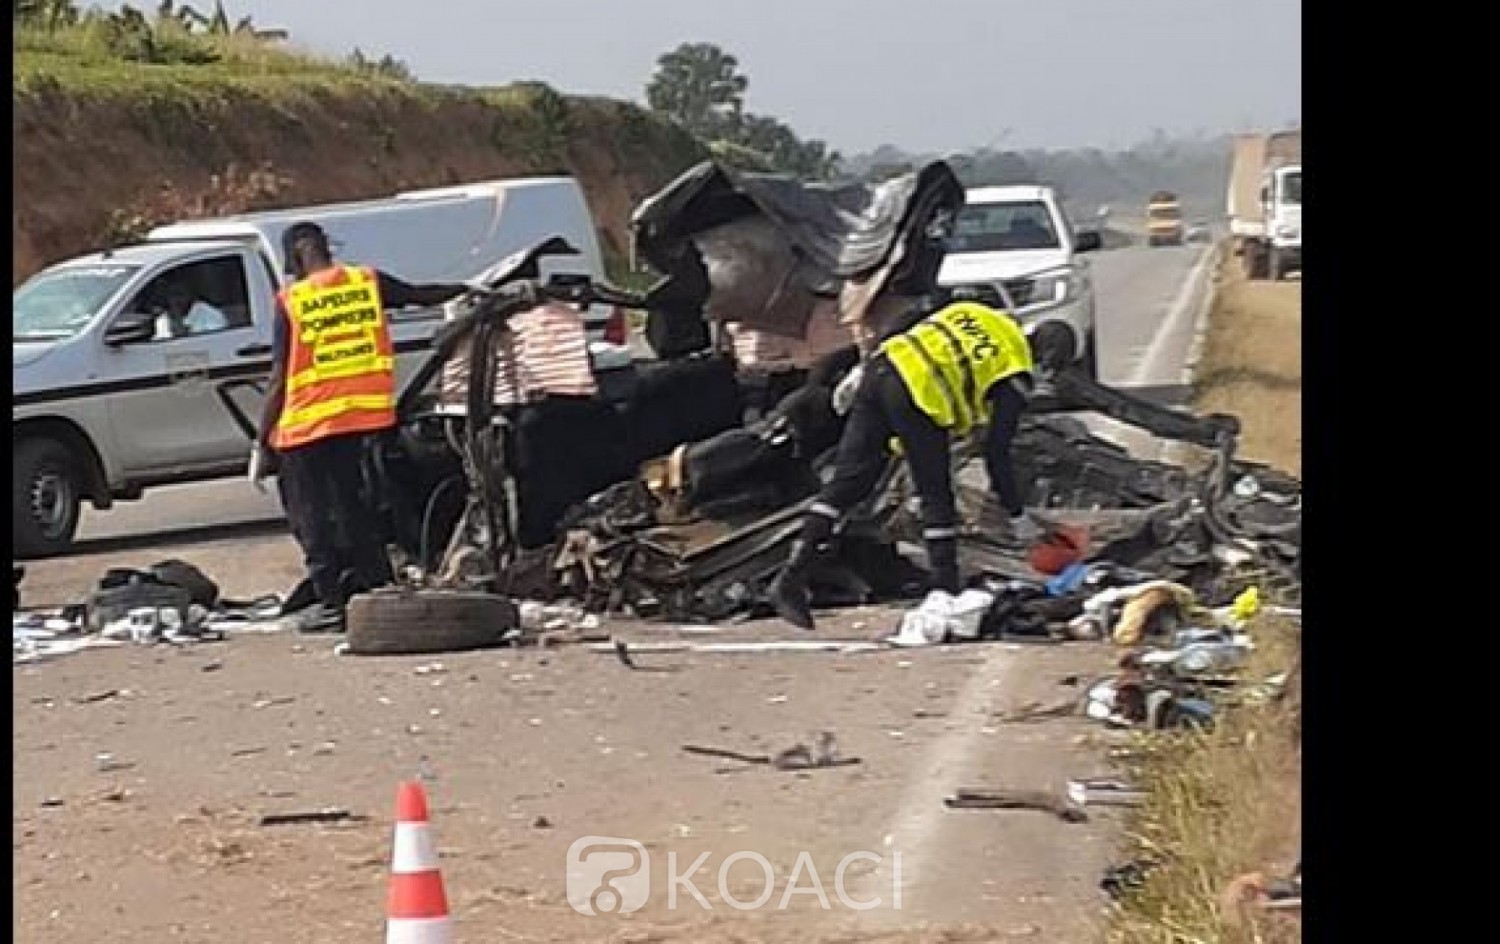 Côte d'Ivoire : Week-end meurtrier sur l'autoroute du nord, 03 morts et des blessés dans un accident impliquant une voiture personnelle et un car de transport